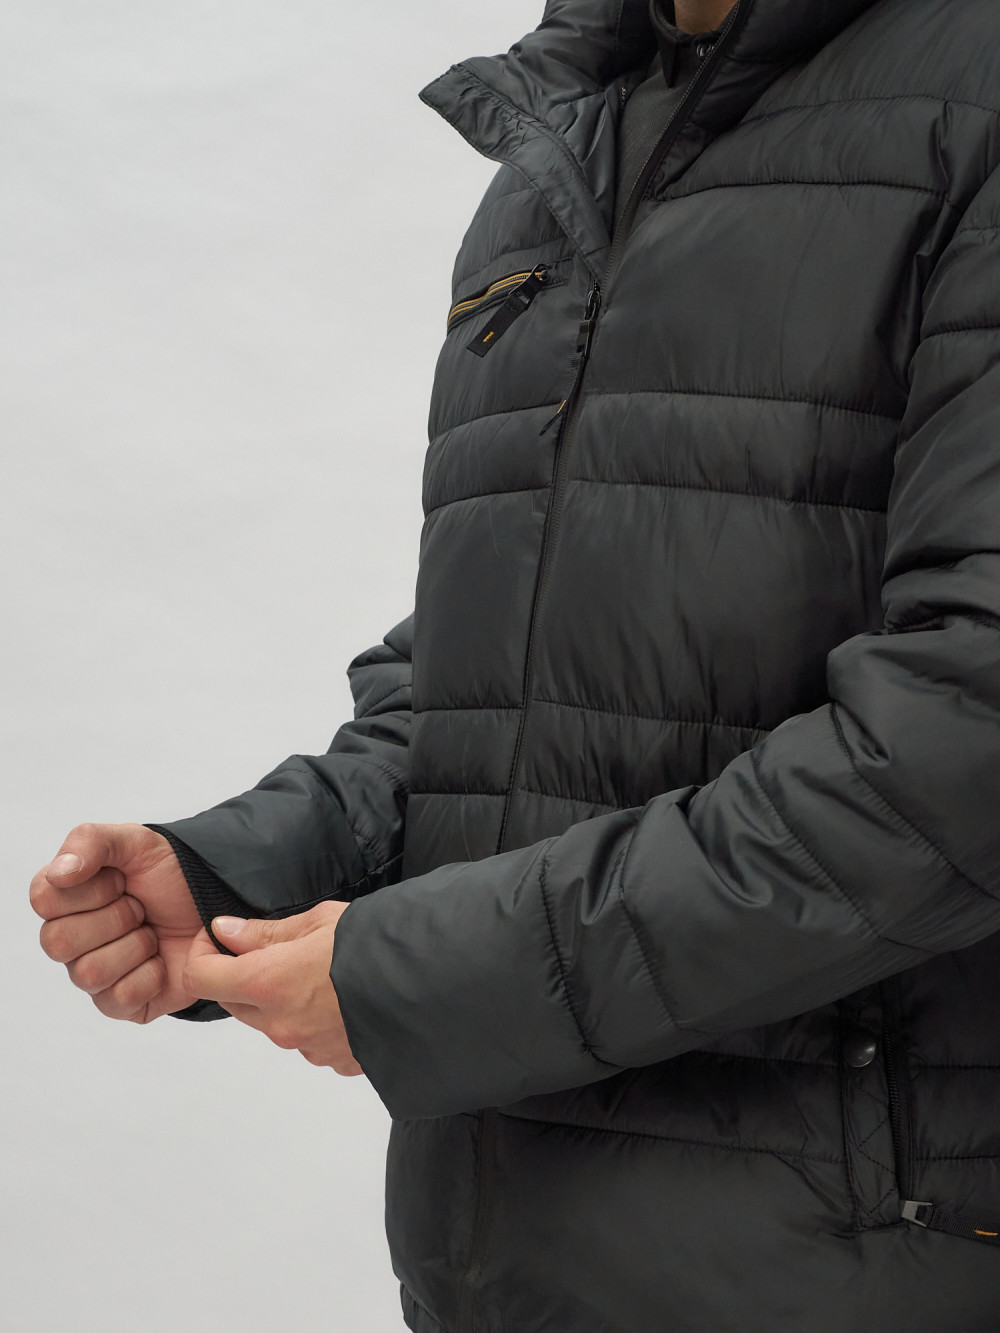 Купить куртку мужскую спортивную весеннюю оптом от производителя недорого в Москве 62175Ch 1